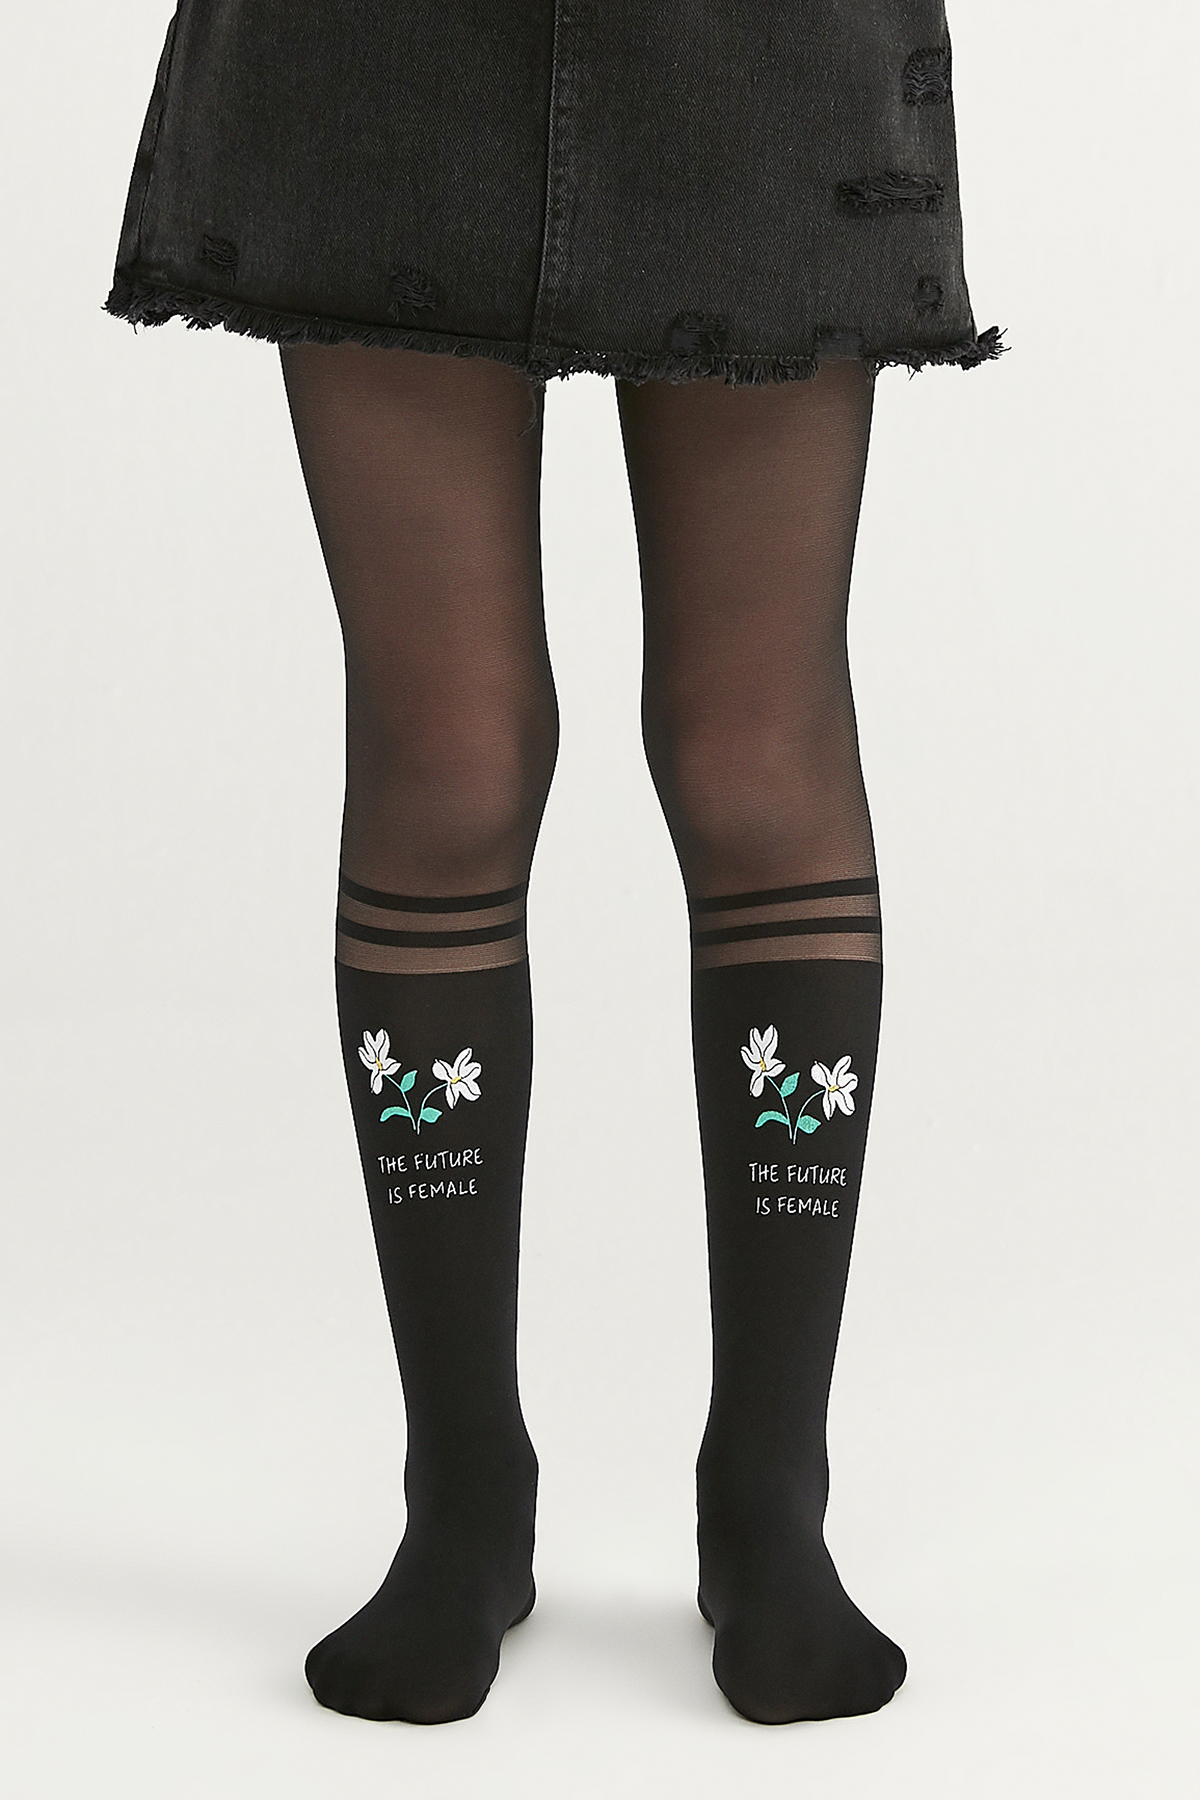 Penti Siyah Kız Çocuk Desenli Külotlu Çorap. 1